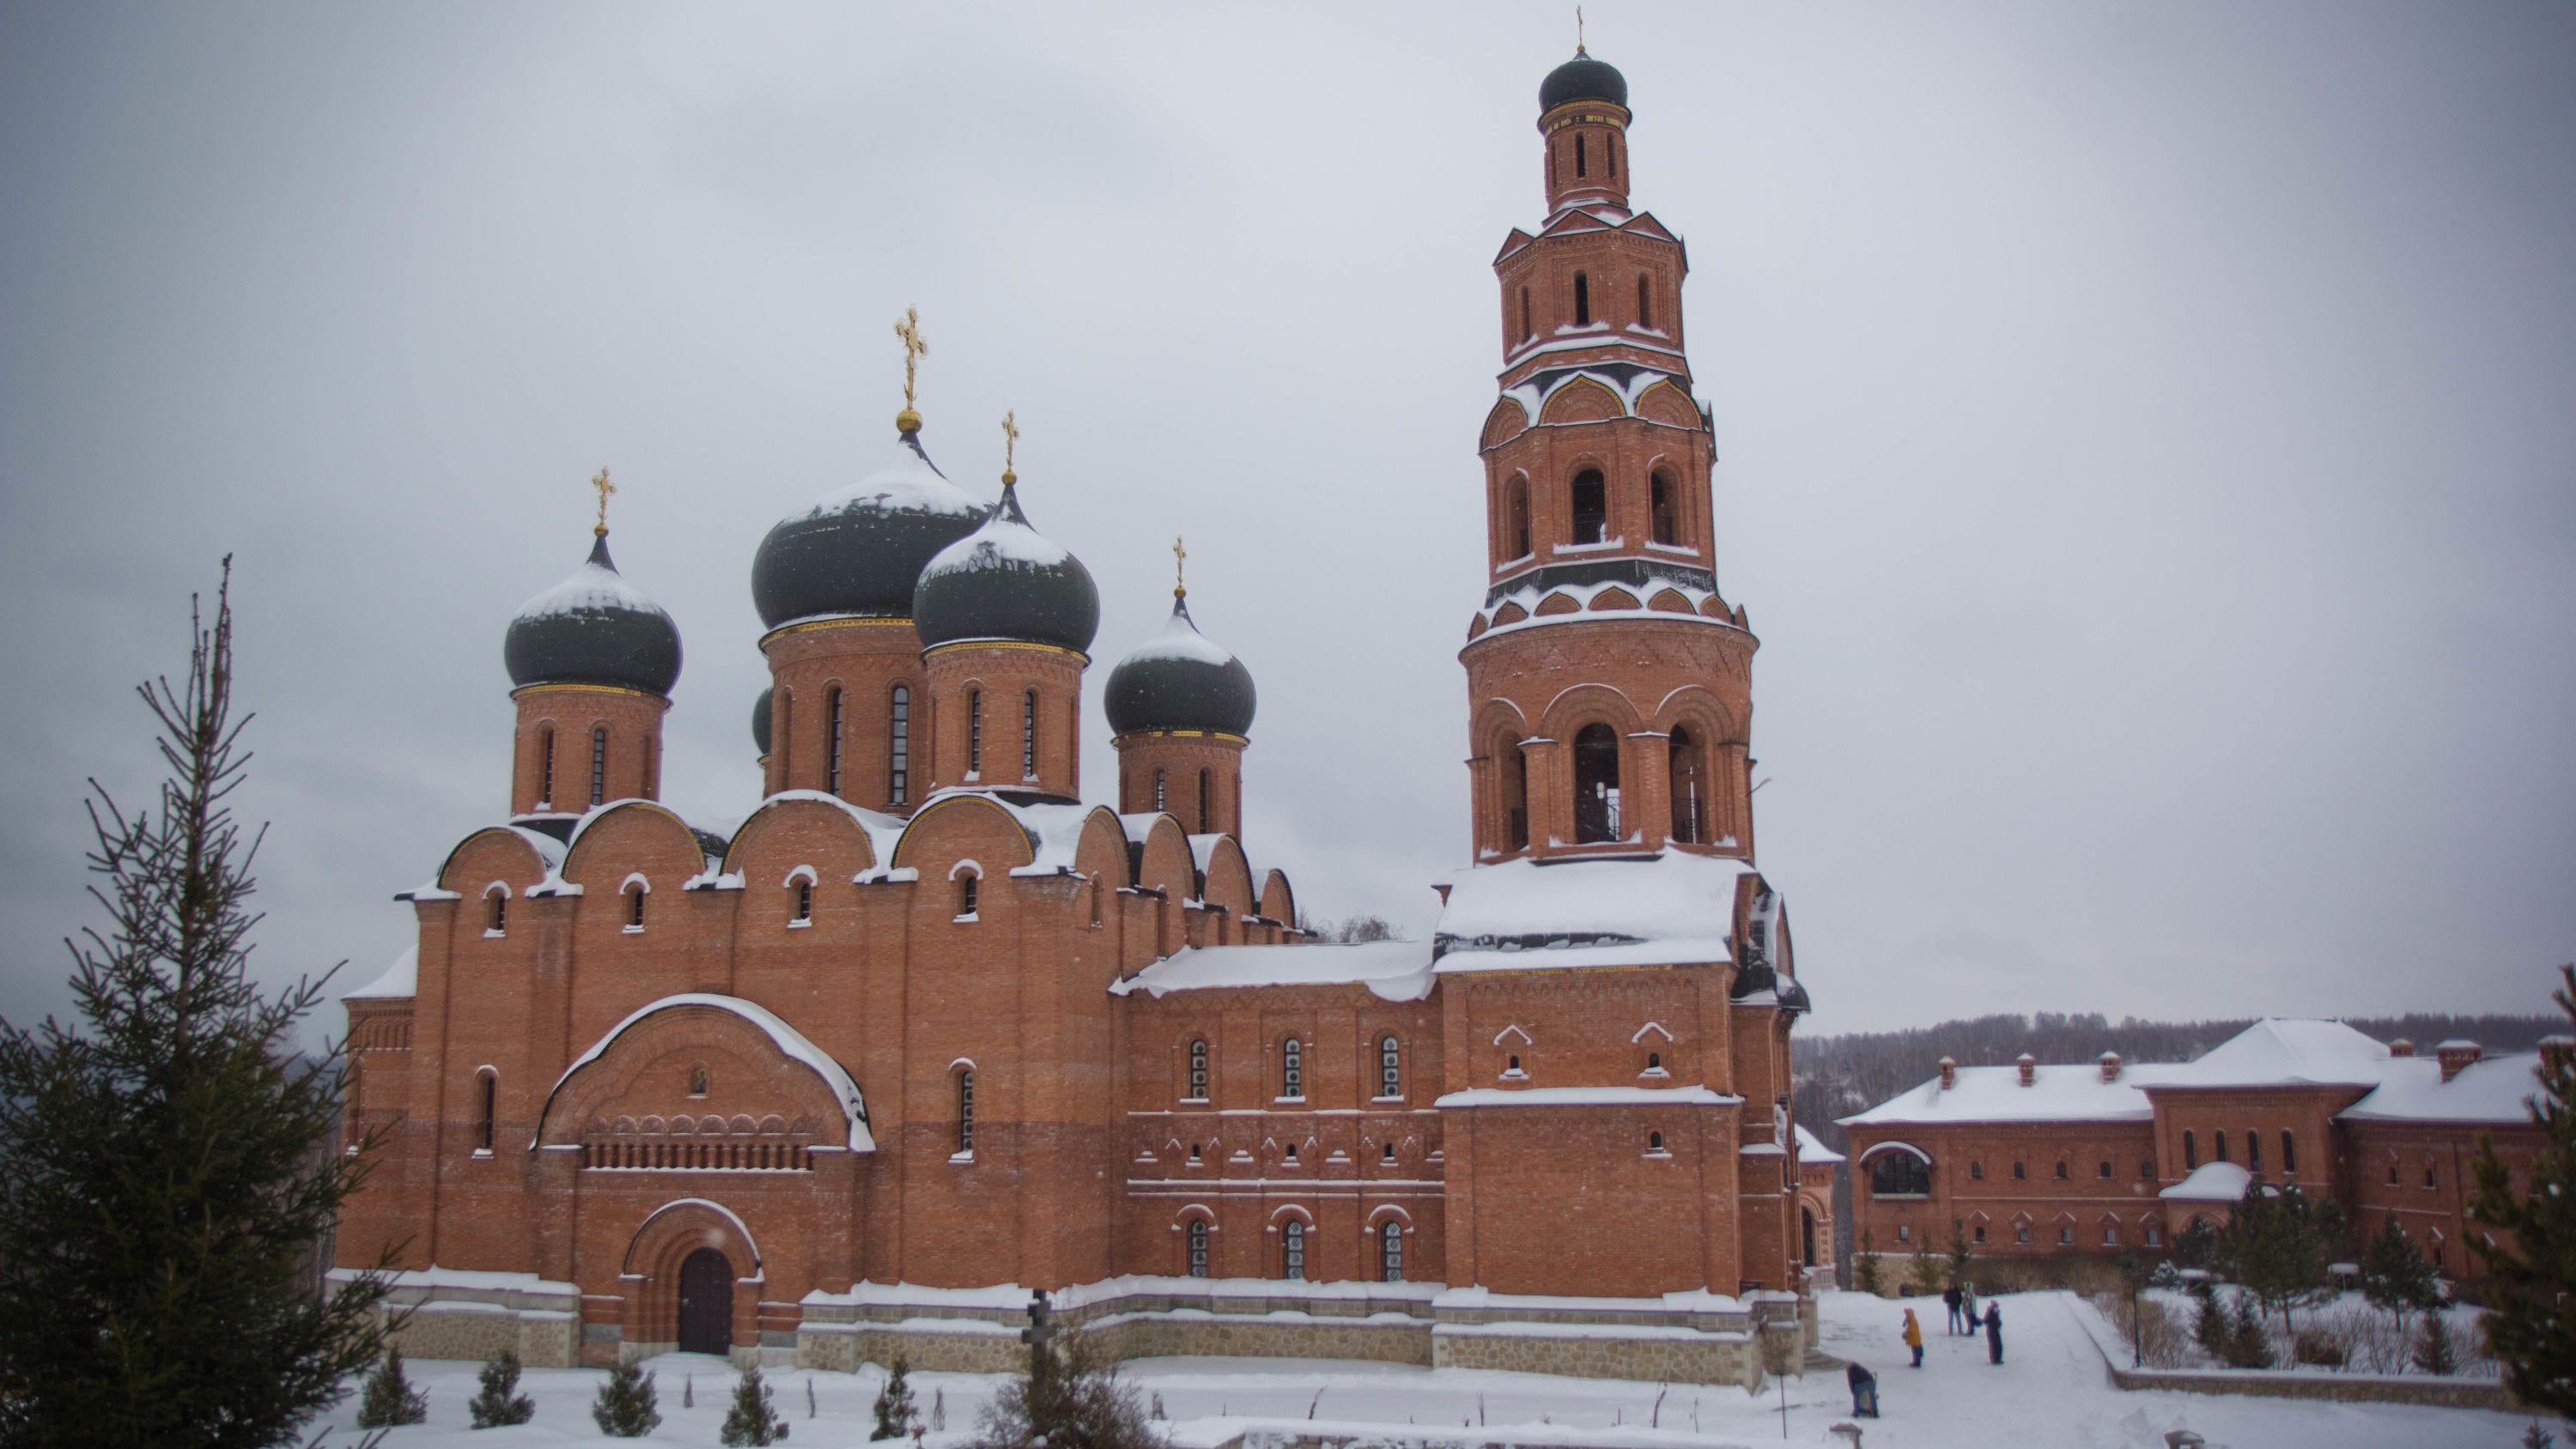 Построенный на руинах: разглядываем фотографии Свято-Георгиевского мужского монастыря